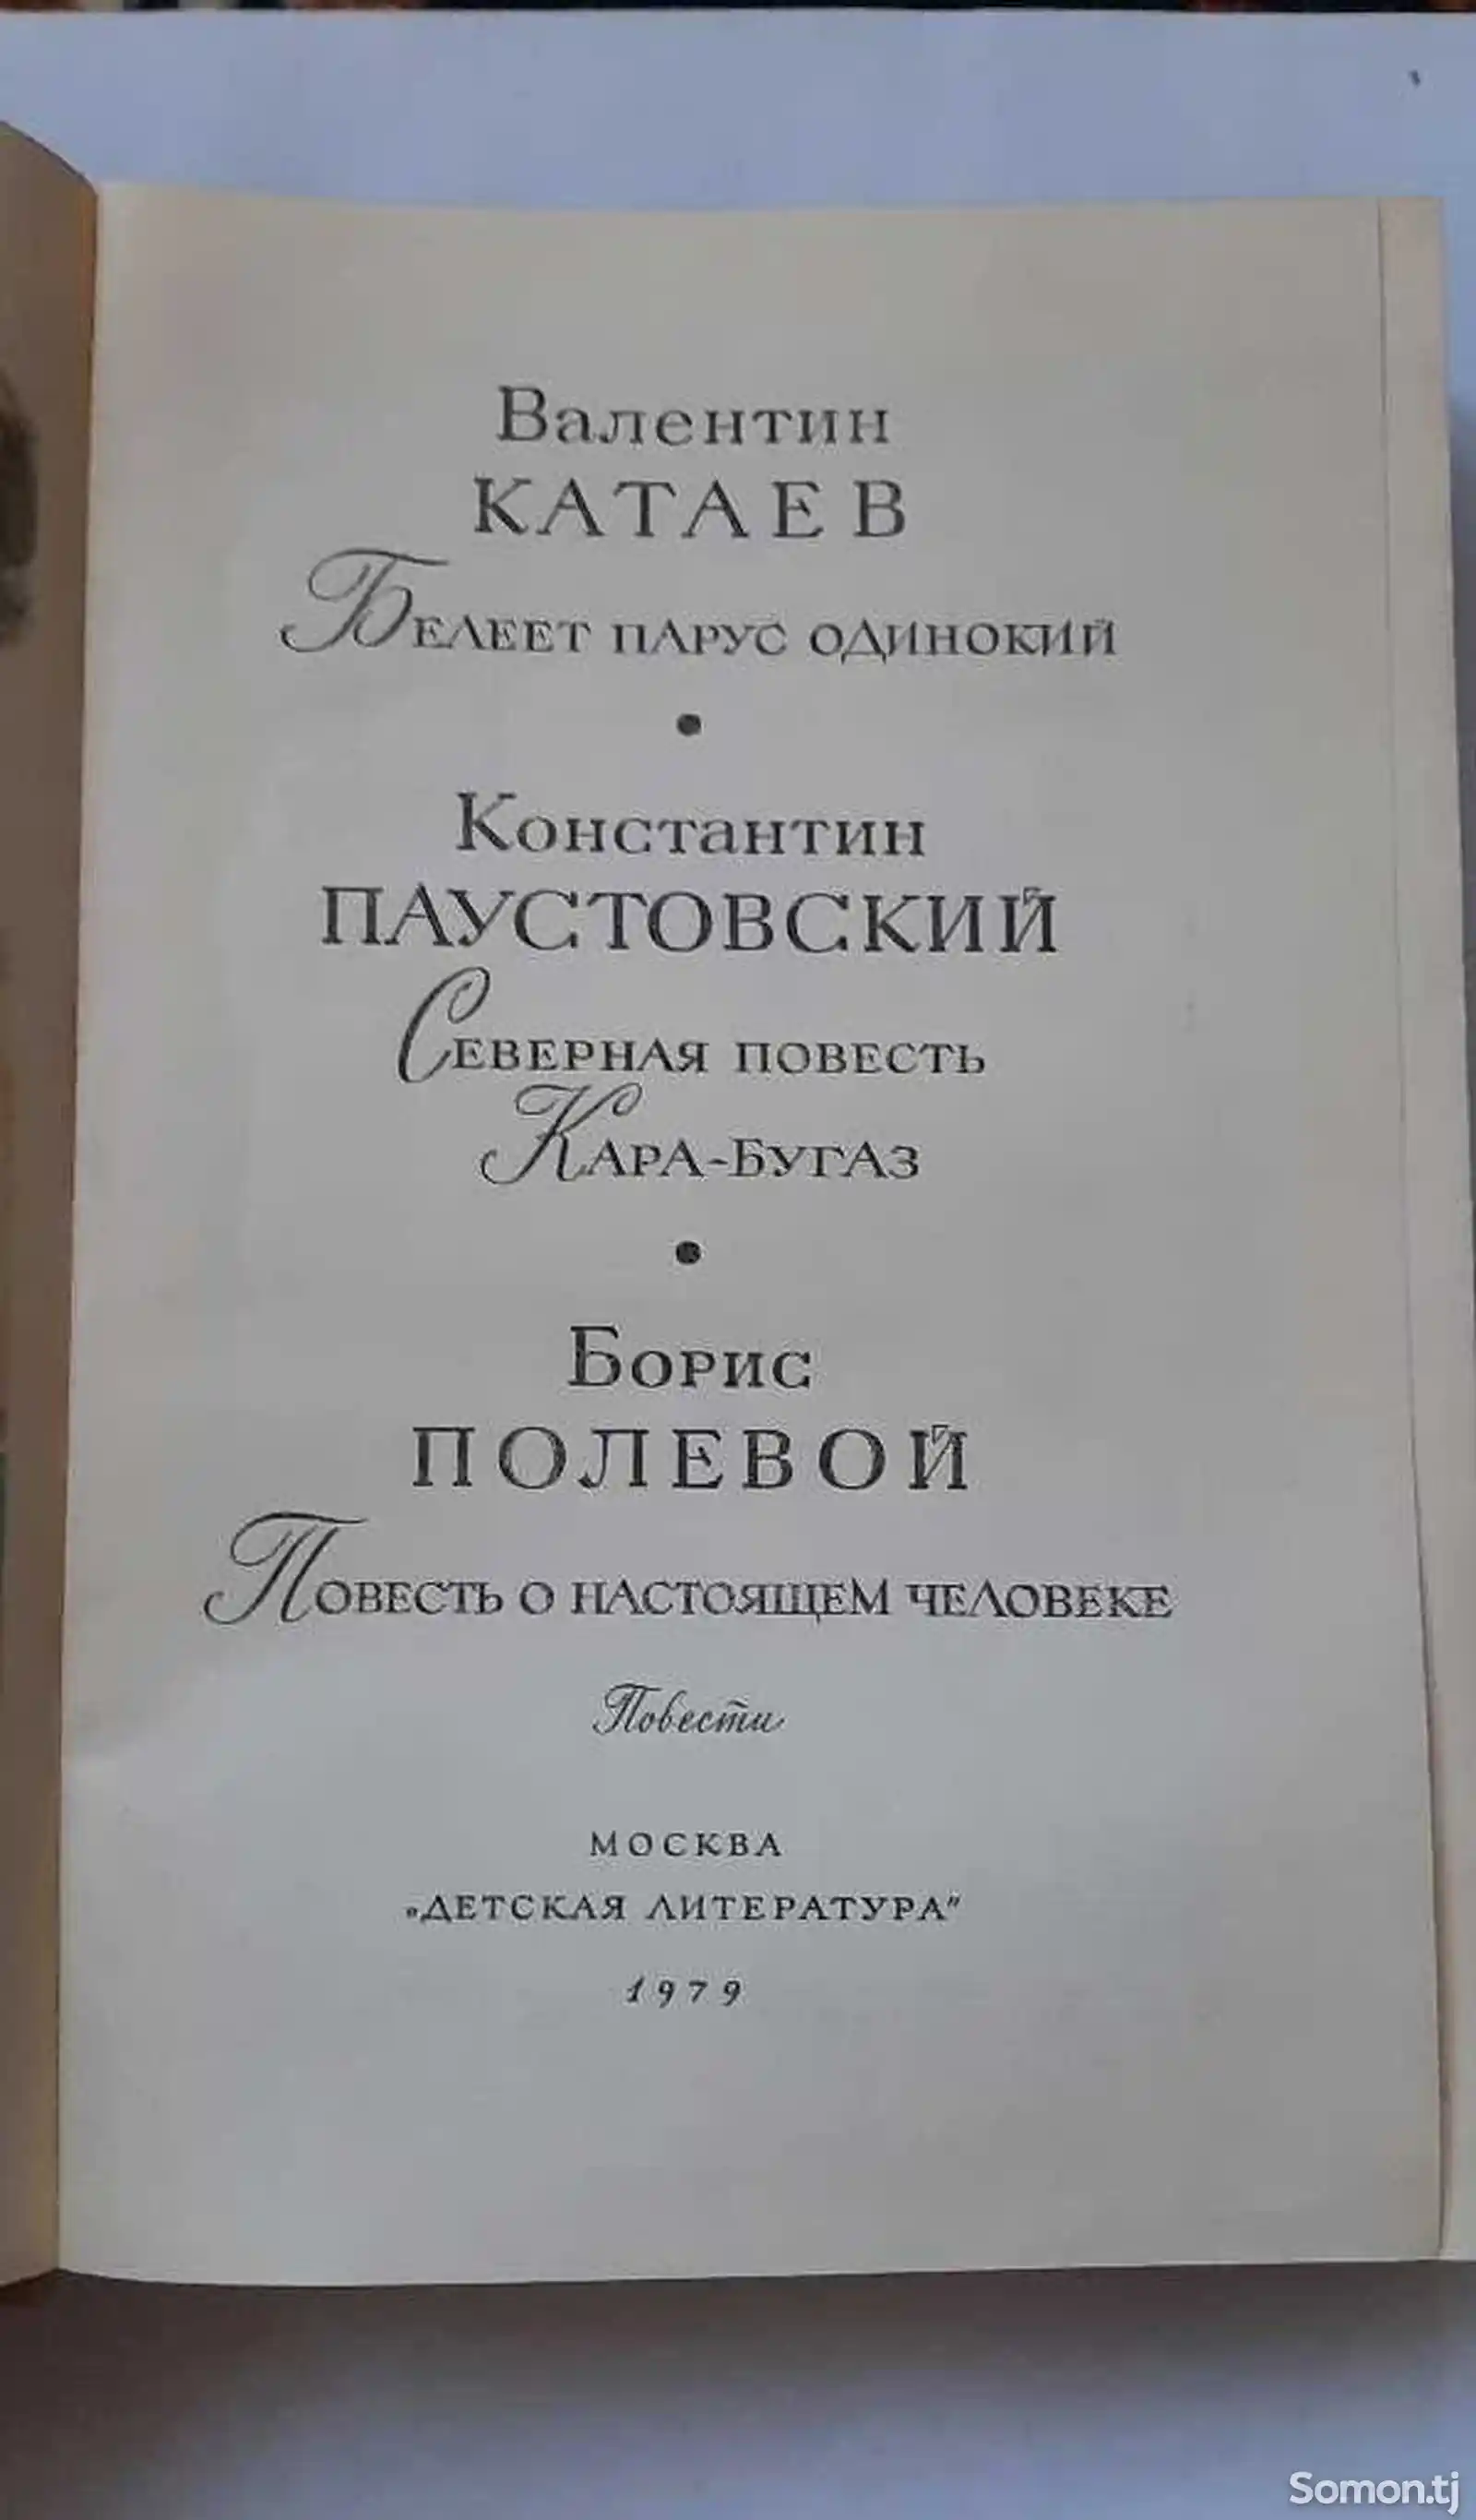 Книга В. Катаев, К. Паутовский,Б. Полевой-2